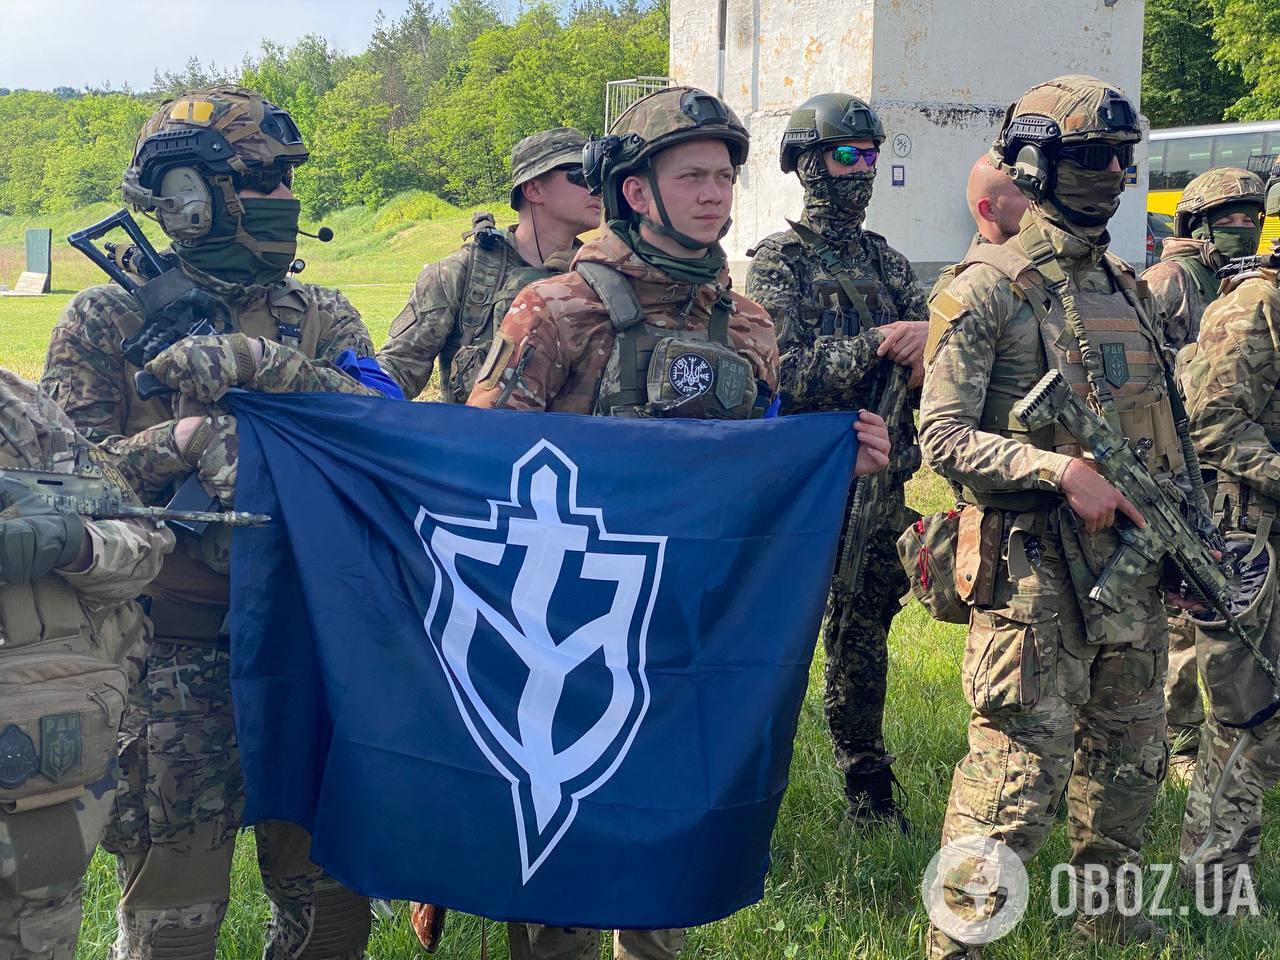 "Вышли с минимальными потерями": в РДК раскрыли детали операции в Белгородской области и назвали главную цель. Фото